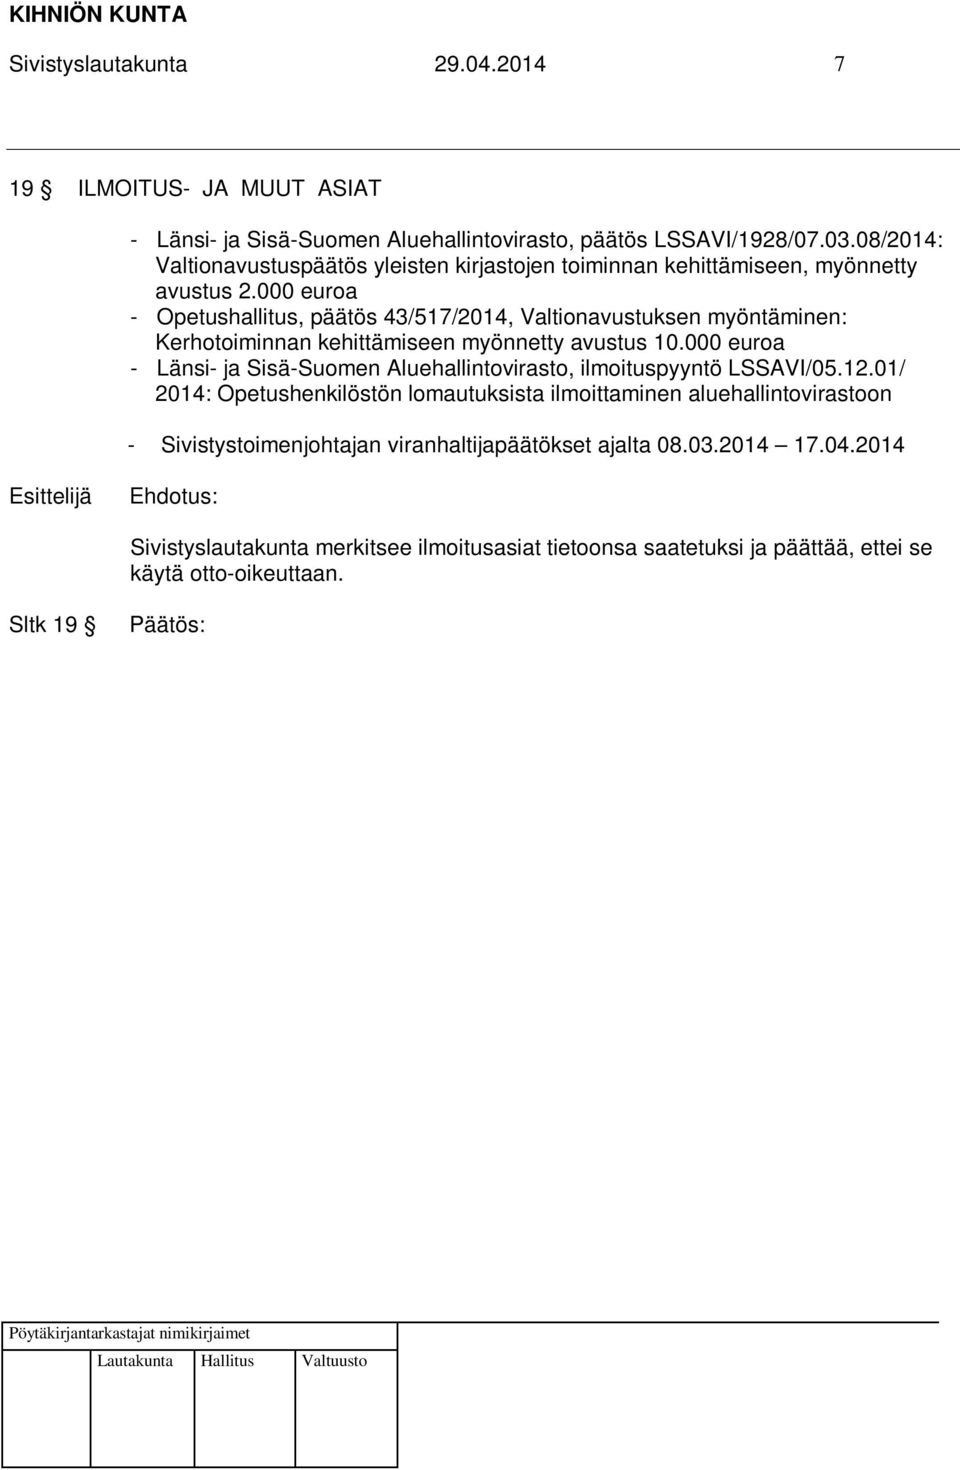 000 euroa - Opetushallitus, päätös 43/517/2014, Valtionavustuksen myöntäminen: Kerhotoiminnan kehittämiseen myönnetty avustus 10.